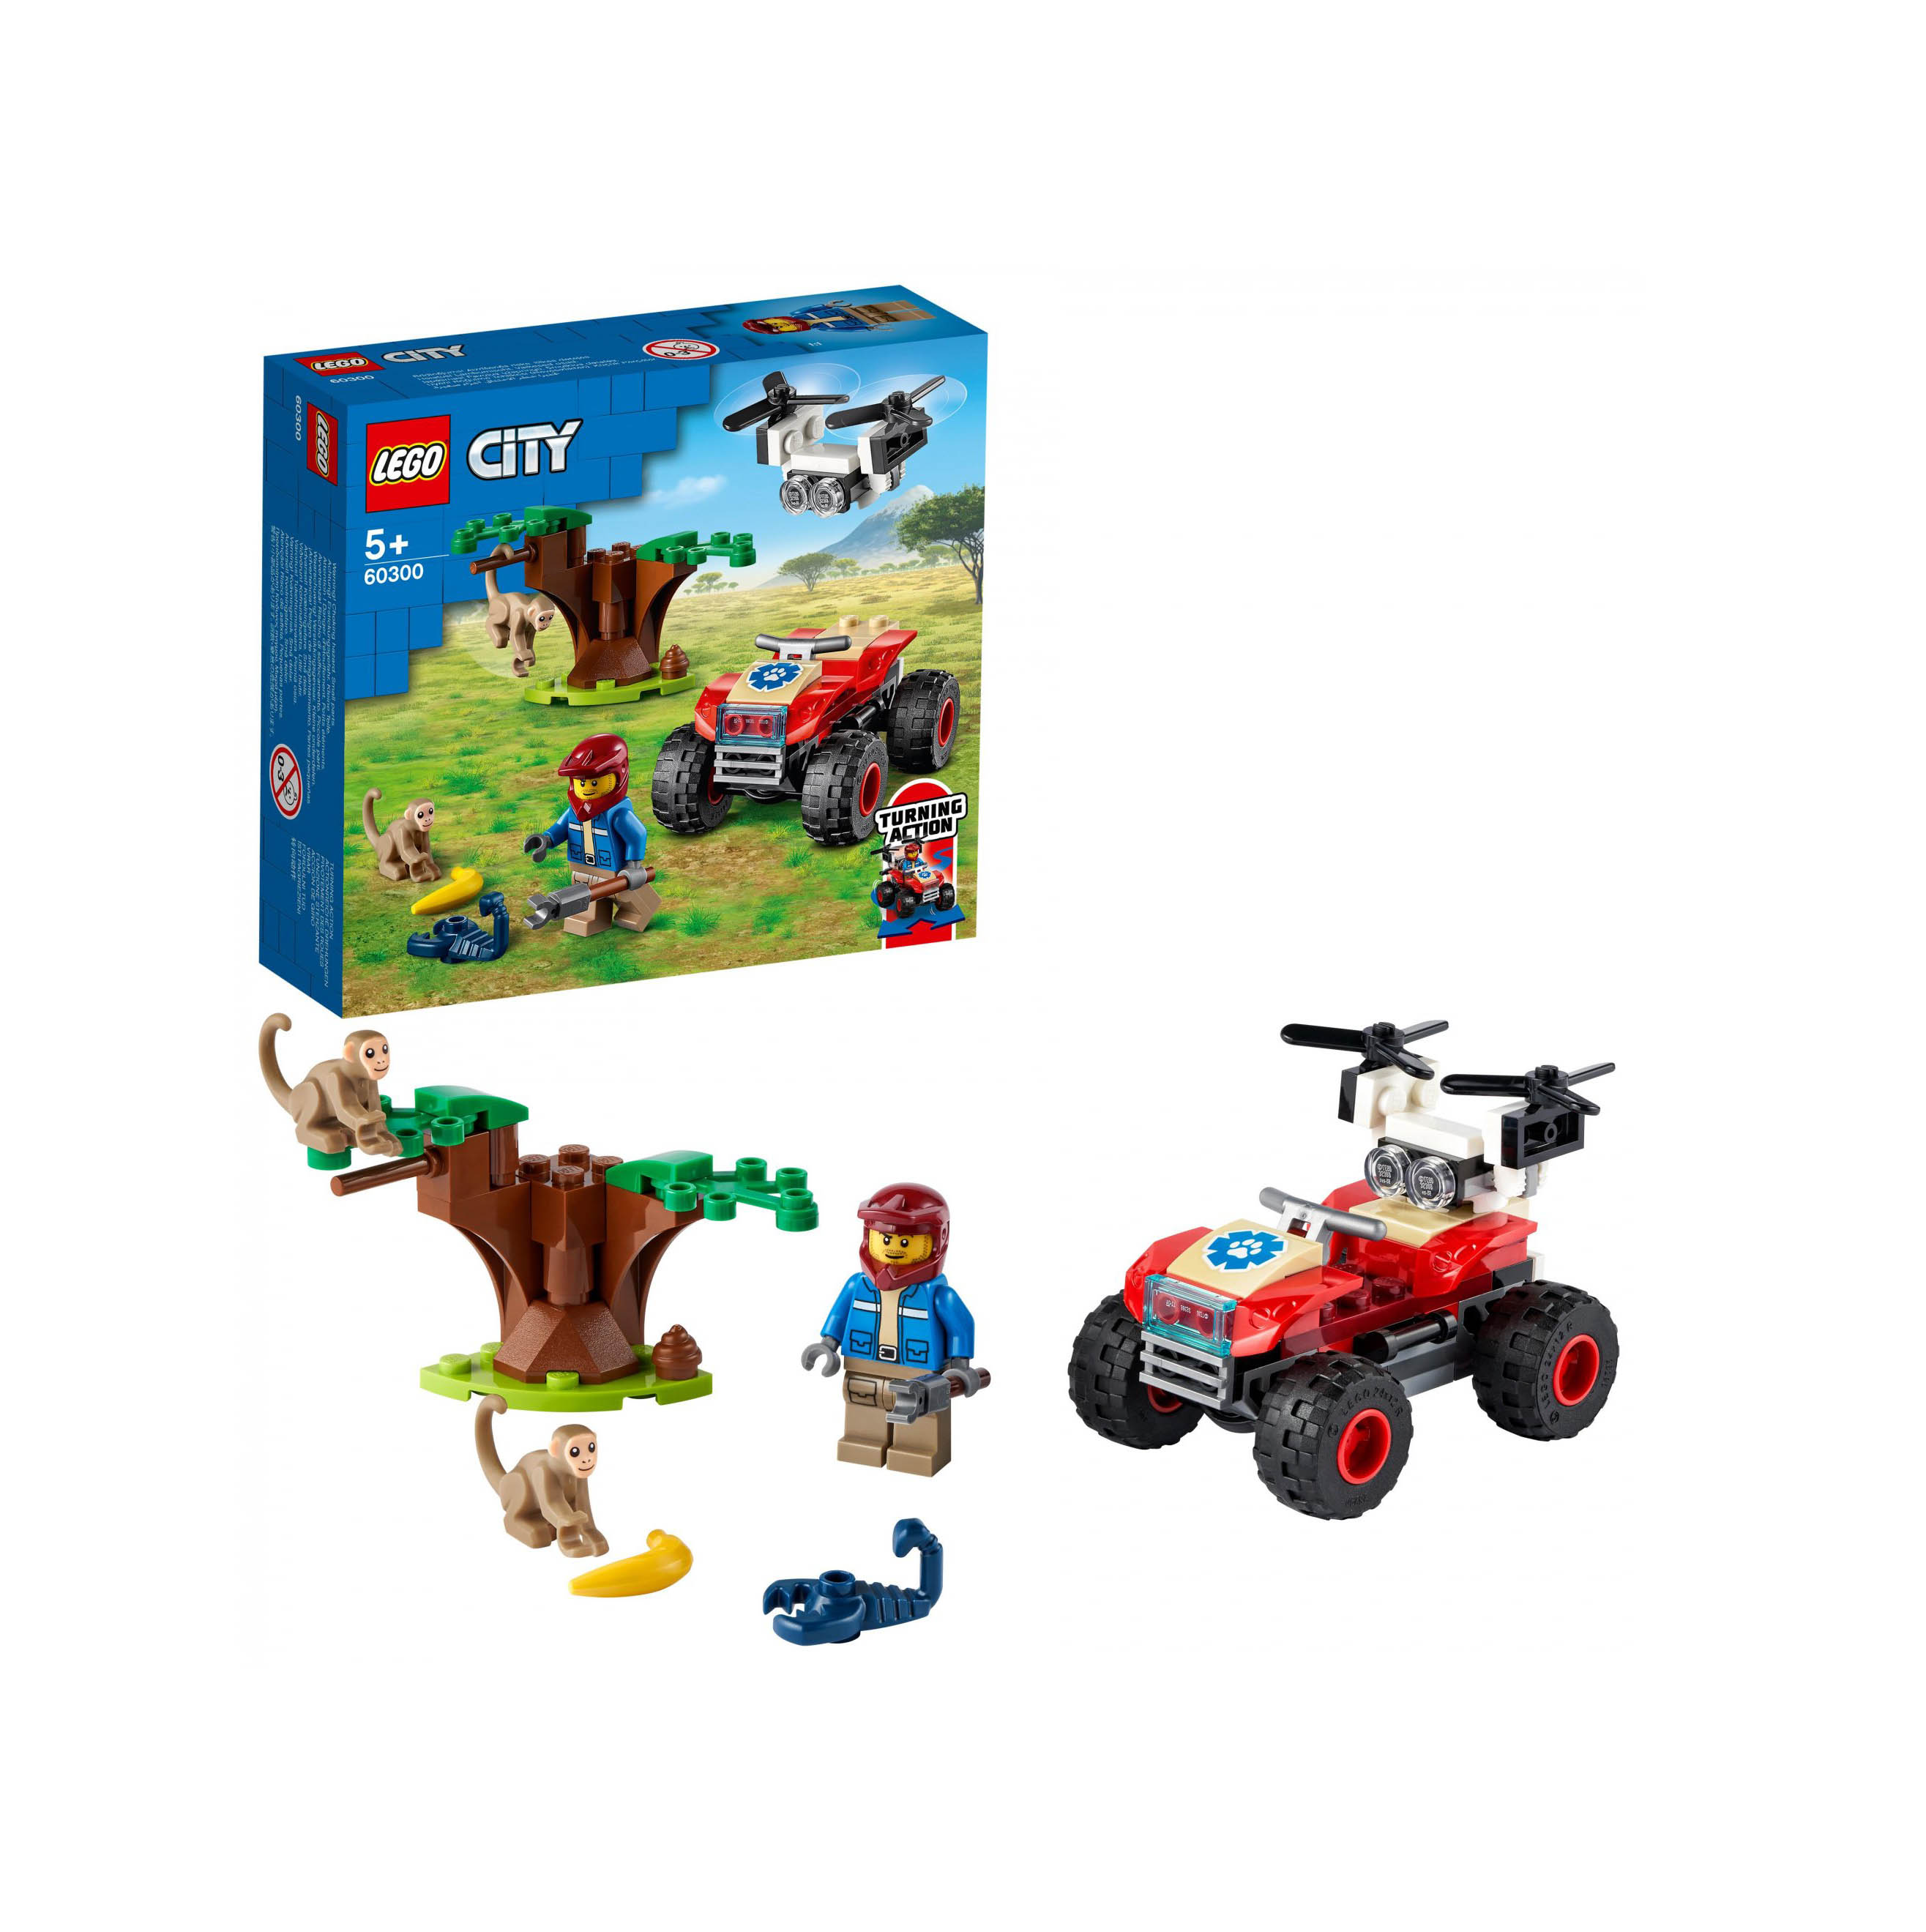 LEGO City Wildlife ATV di Soccorso Animale, Giocattoli per Bambini di 5 Anni con 60300, , large